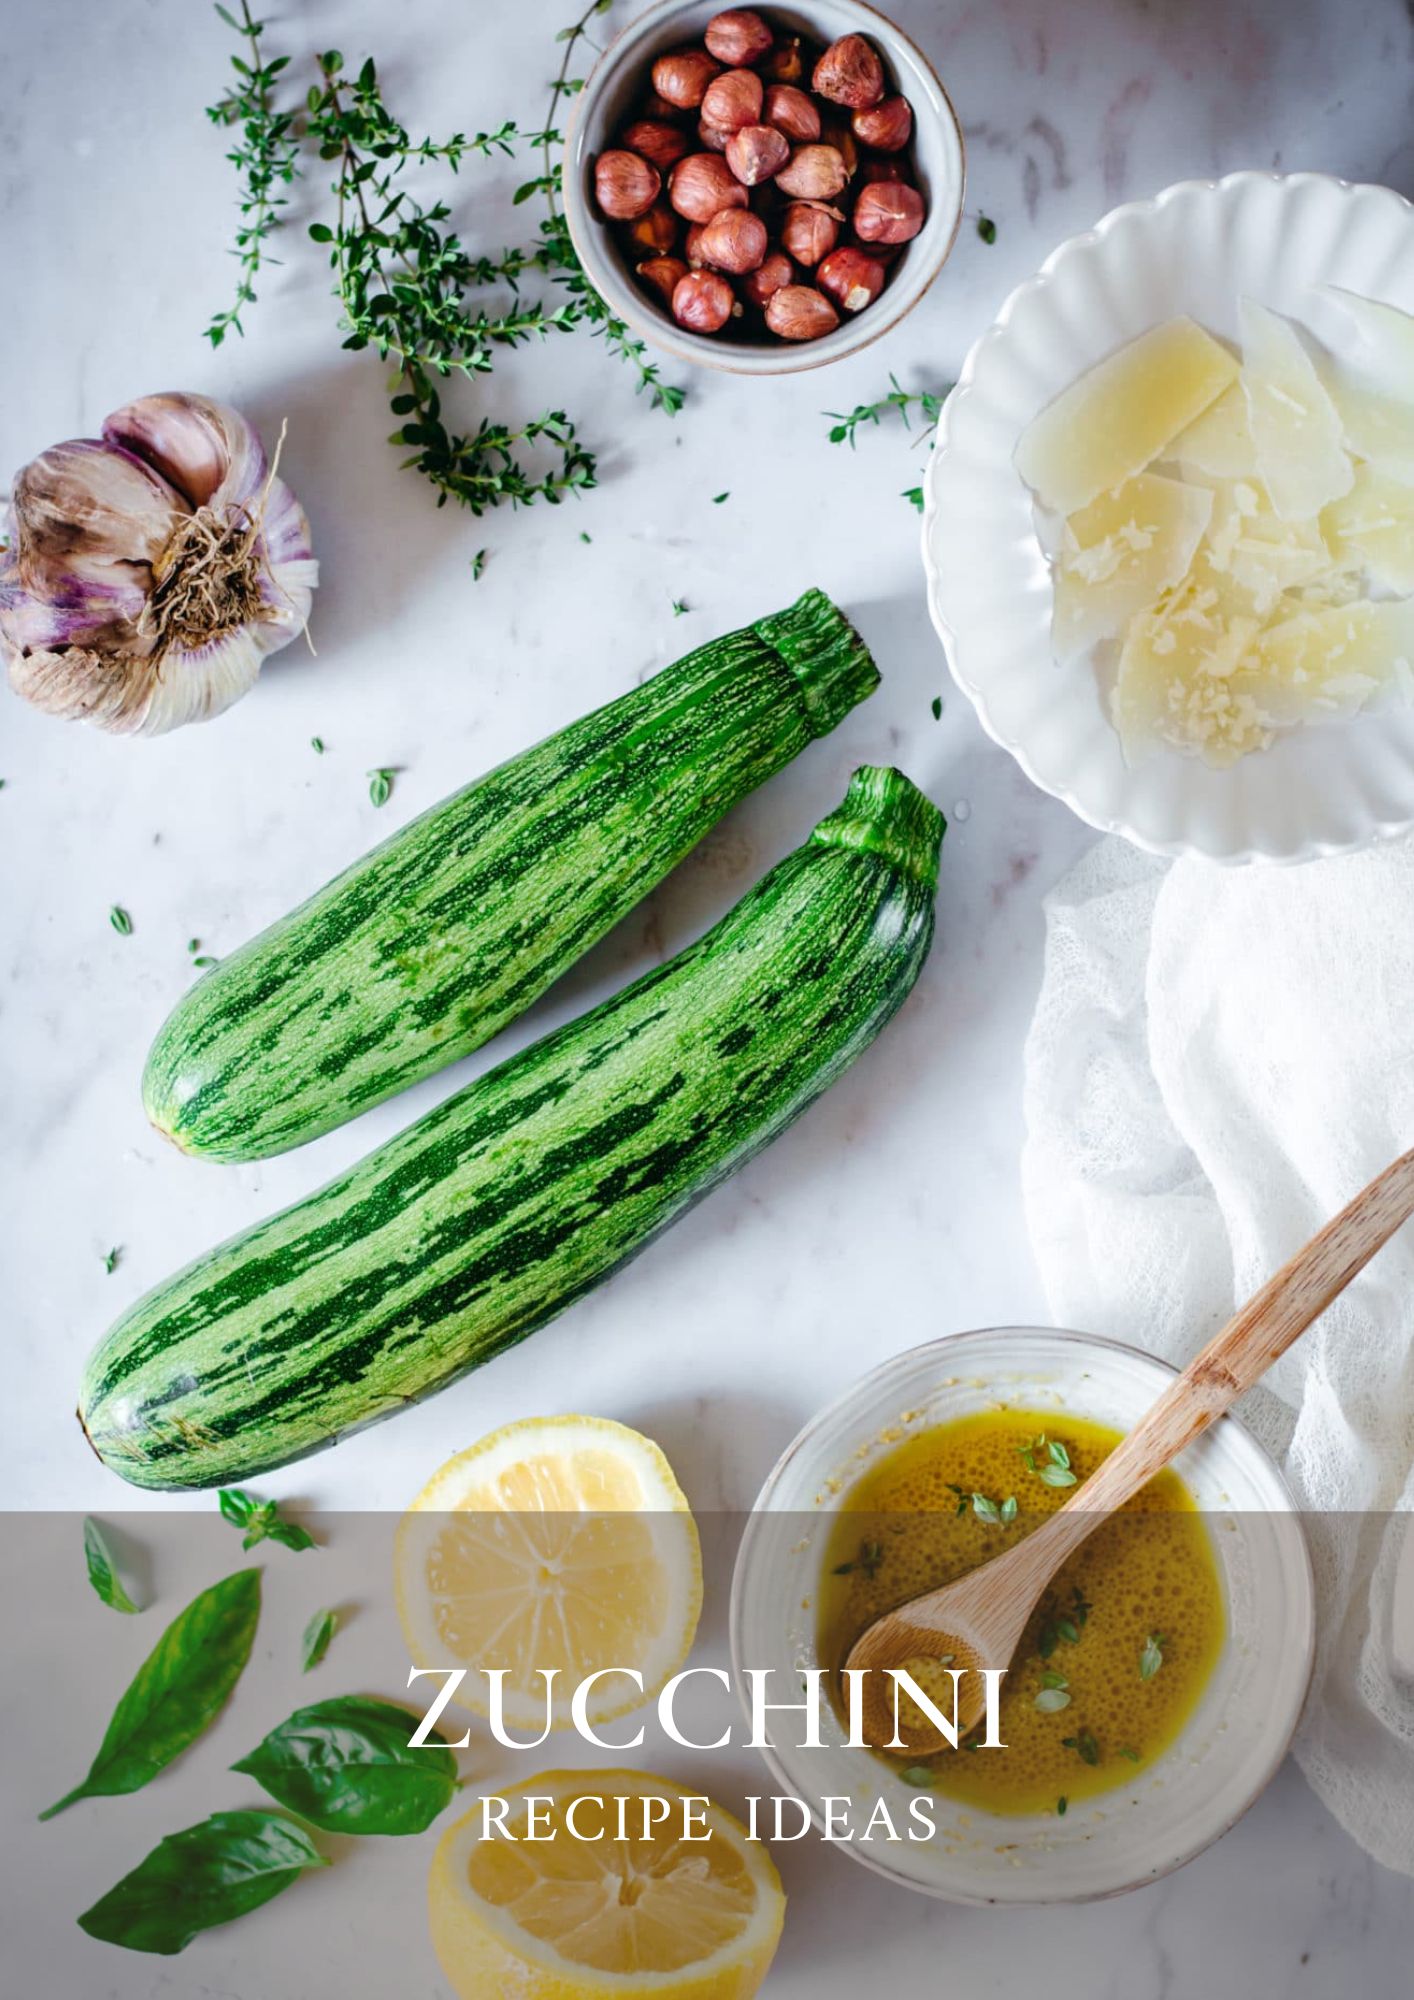 Zucchini recipe ideas